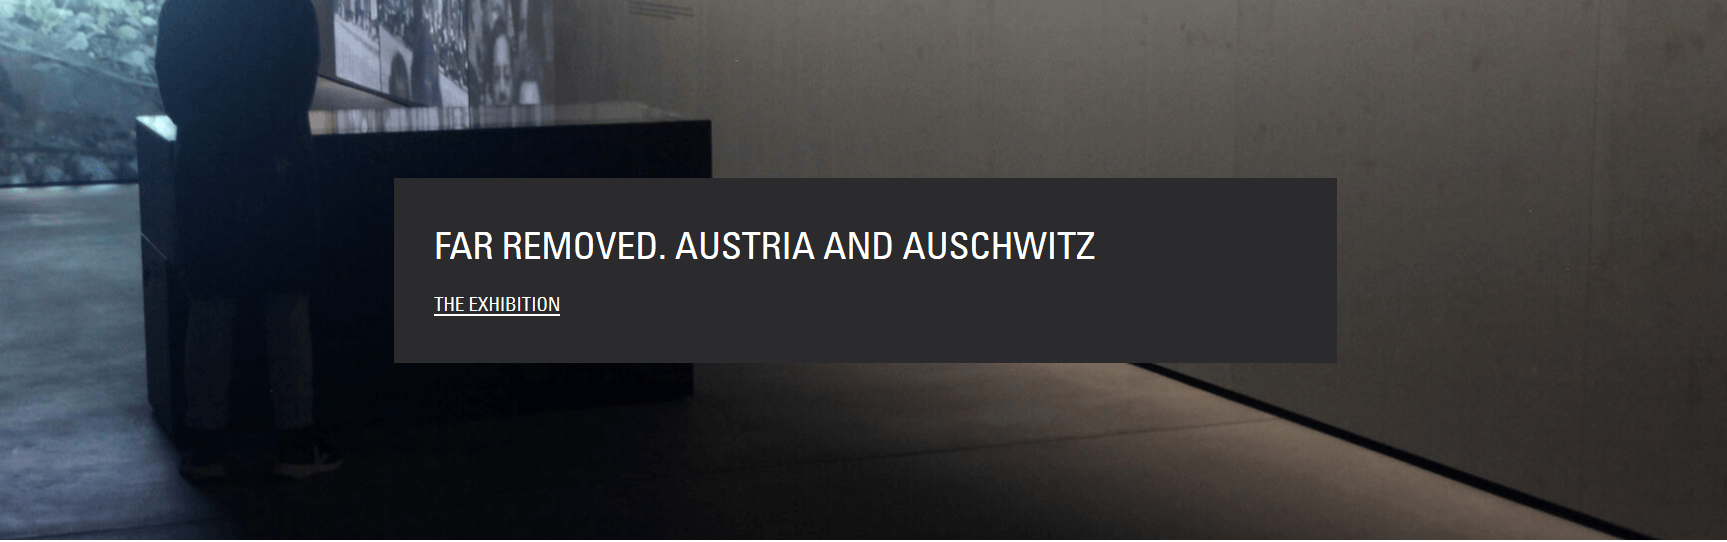 Website of the new Austrian exhibition at Auschwitz